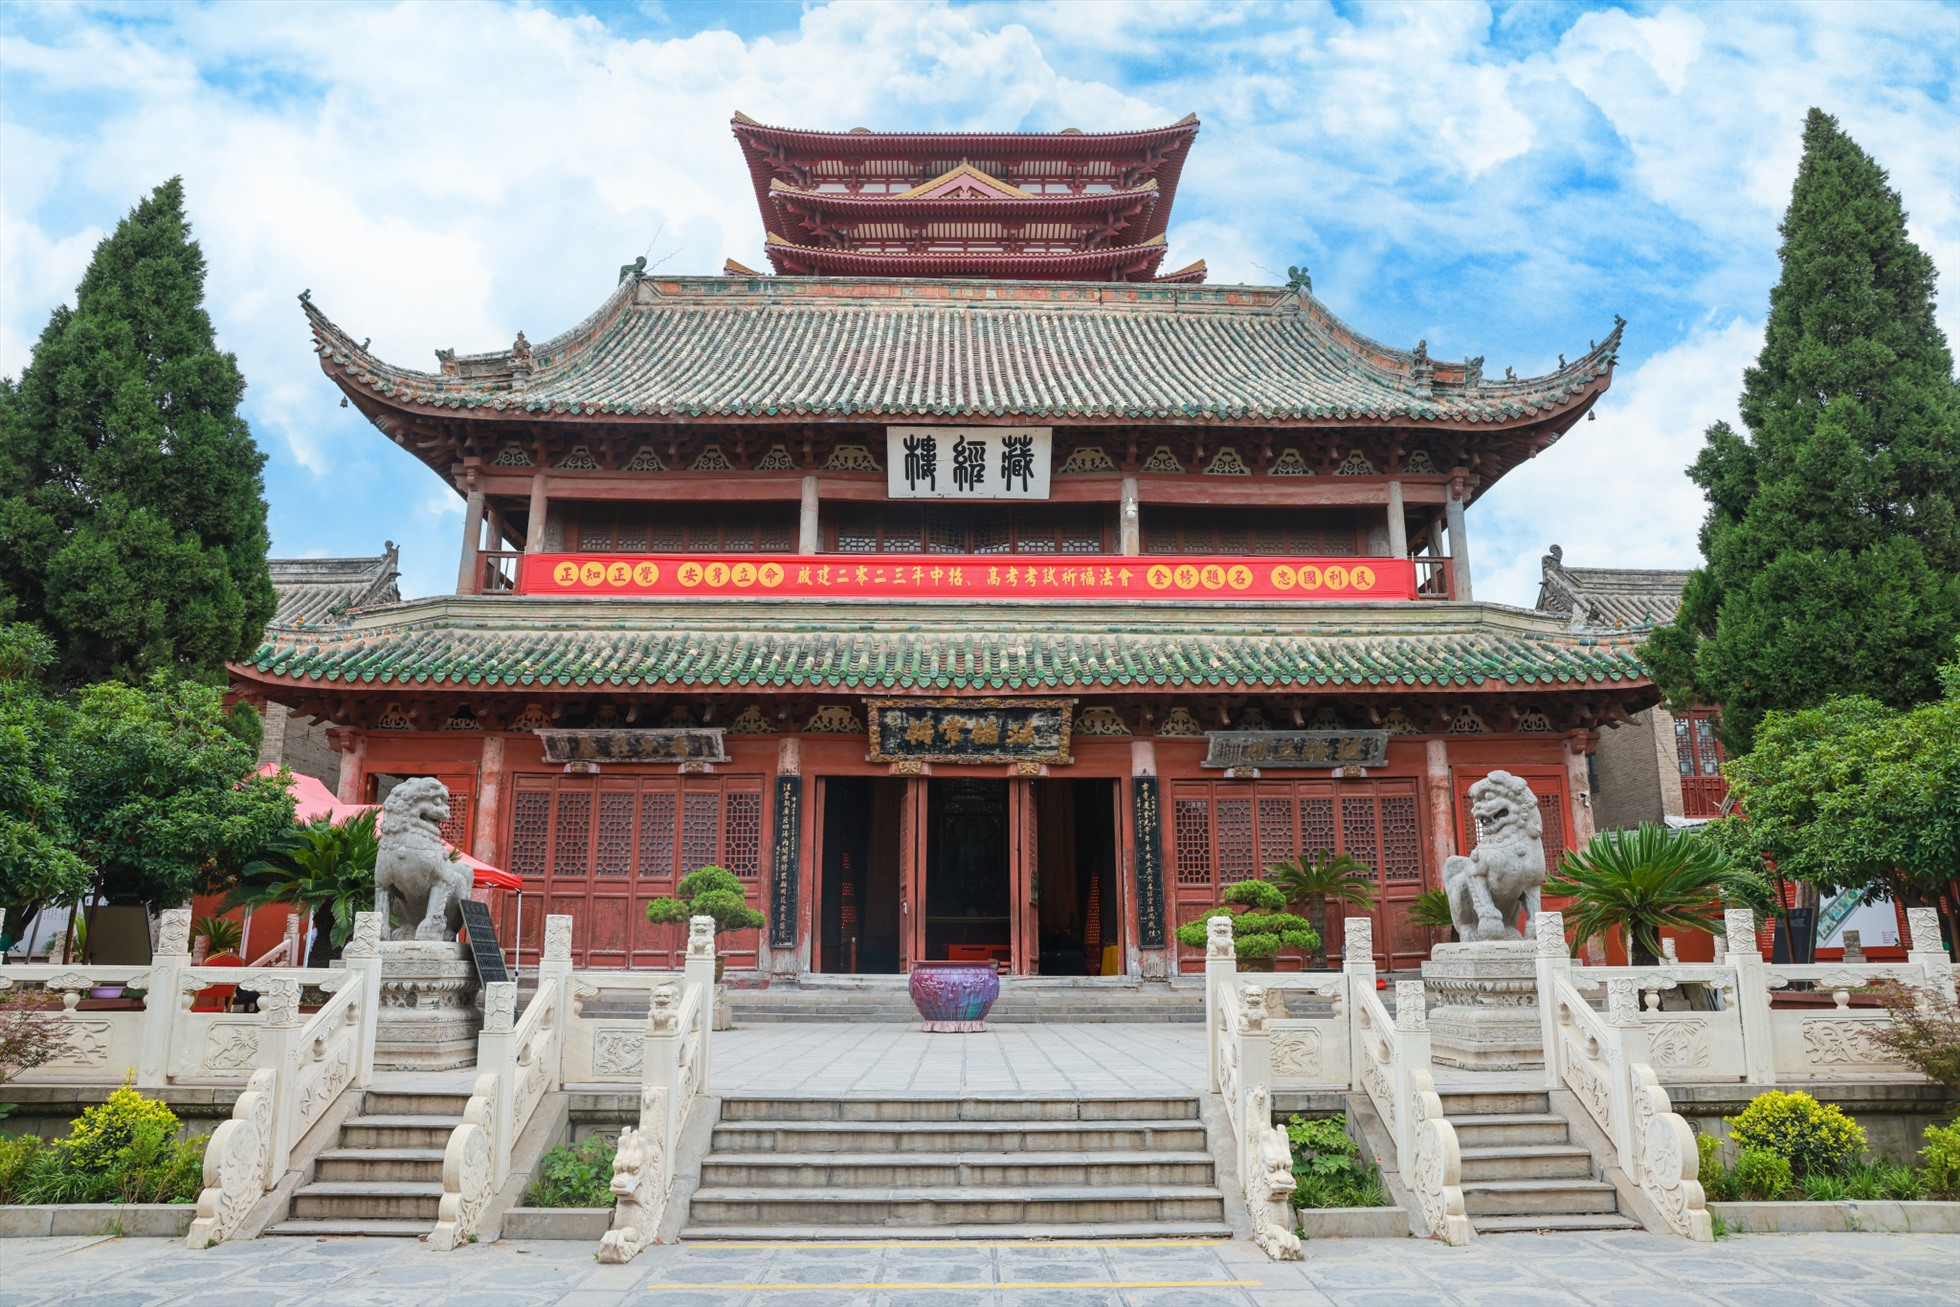 Du lịch Trung Quốc, xem Bao Công xử án trong phủ Khai Phong